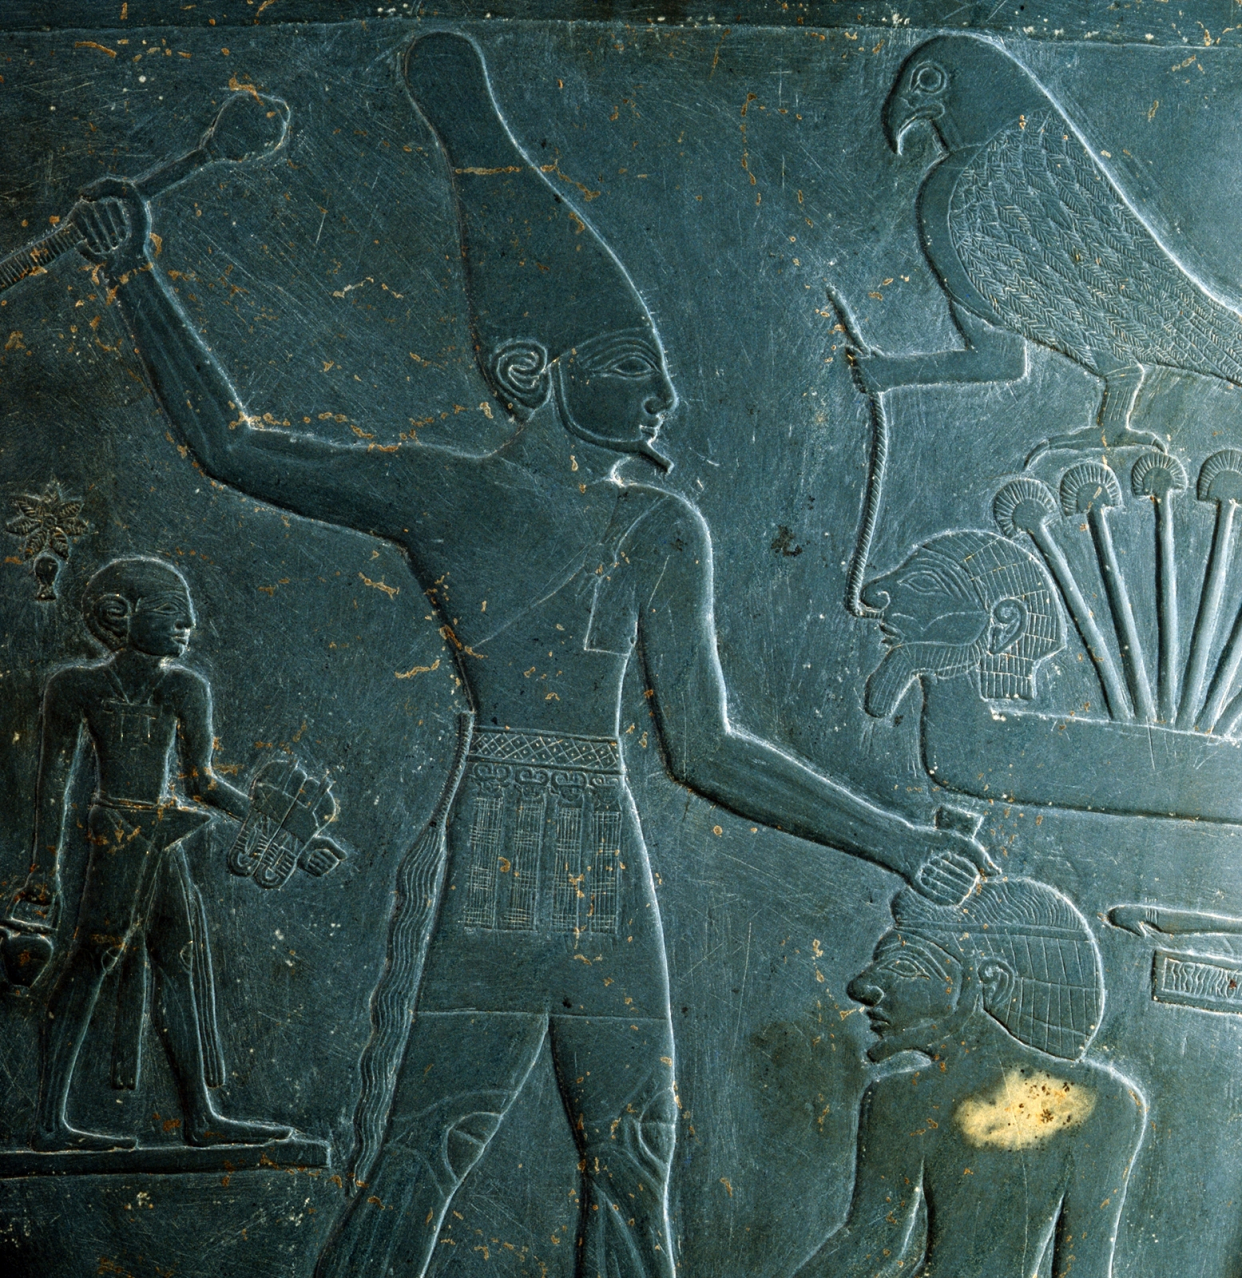 埃及第一王朝蝎子王图片